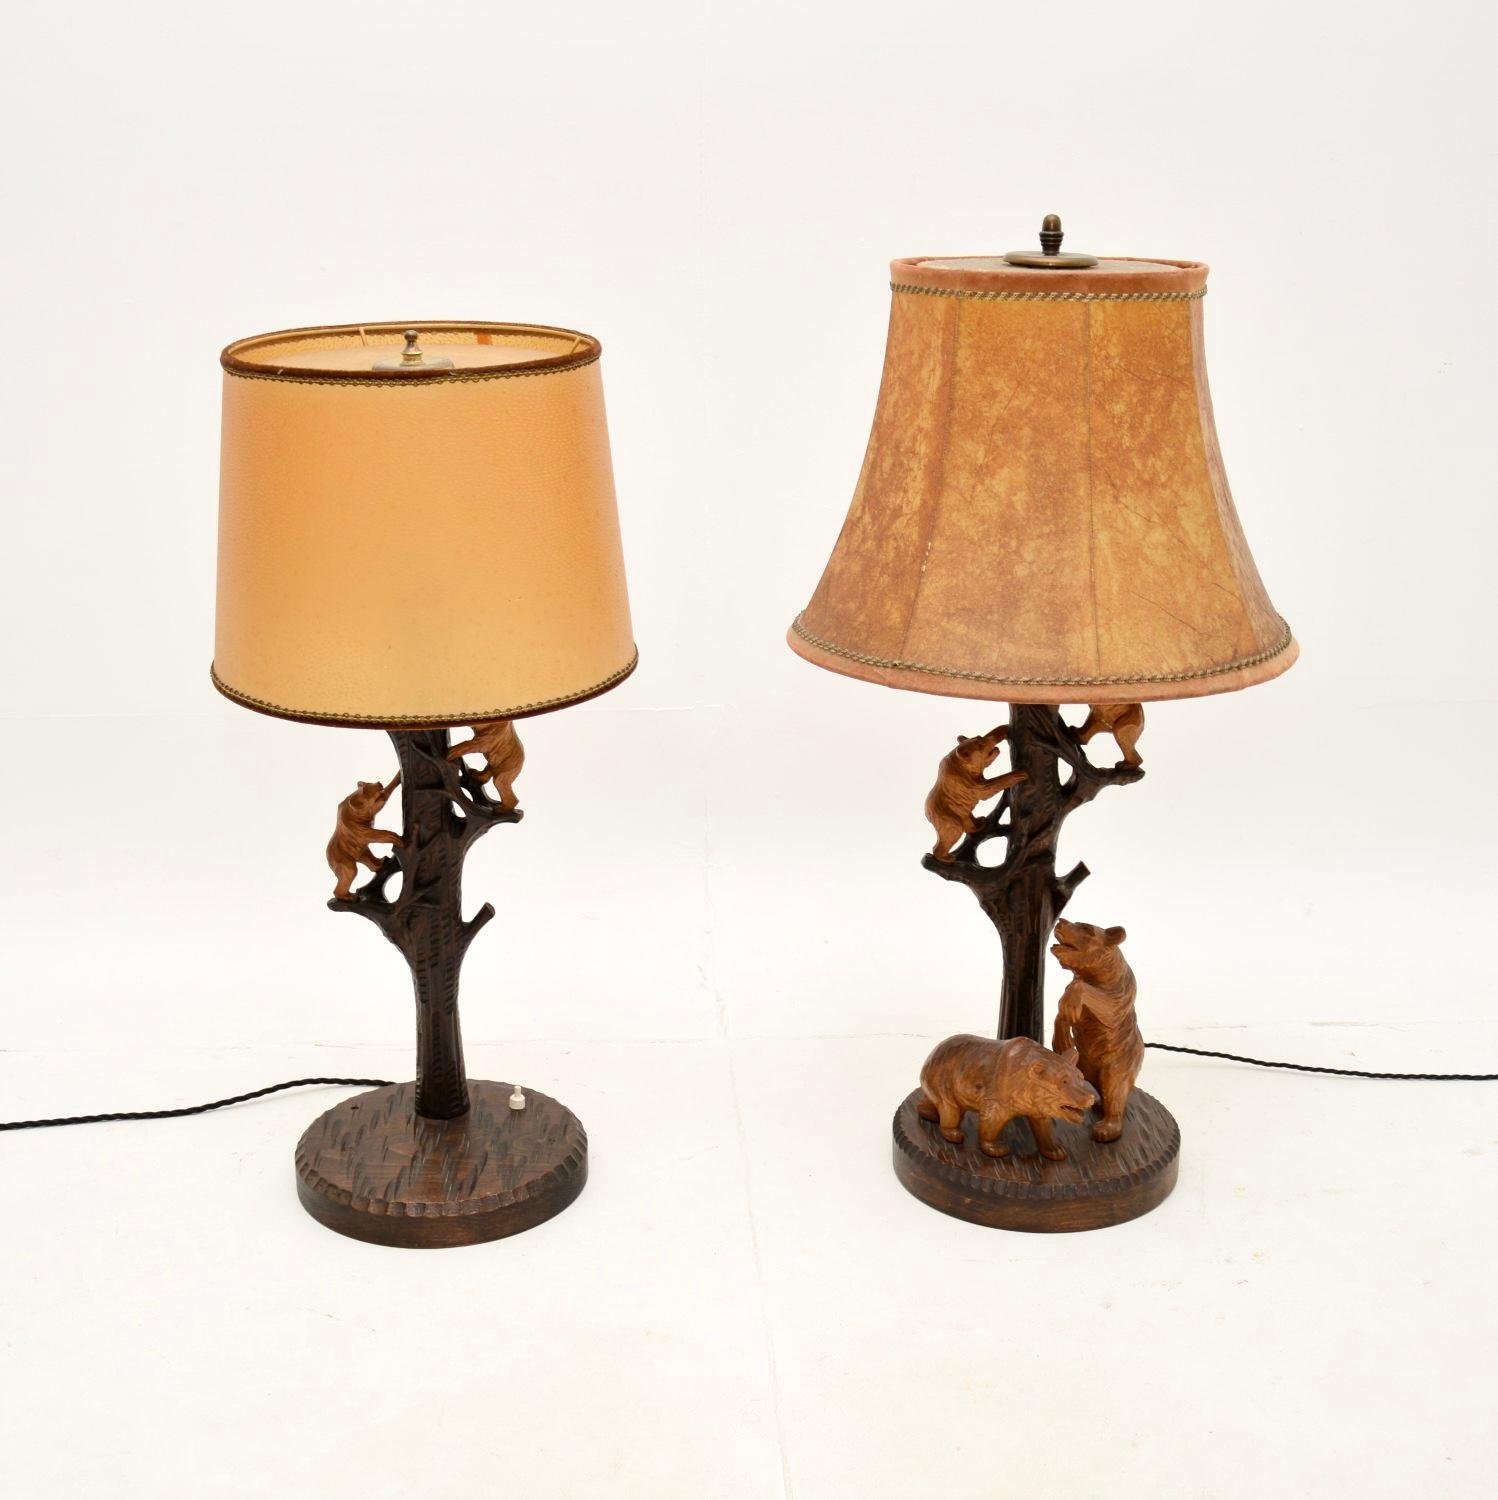 Une charmante paire assortie de lampes de table allemandes vintage en bois noir. Récemment importées d'Allemagne, elles datent d'environ les années 1950.

La qualité est superbe, les supports sont magnifiquement sculptés et représentent des troncs